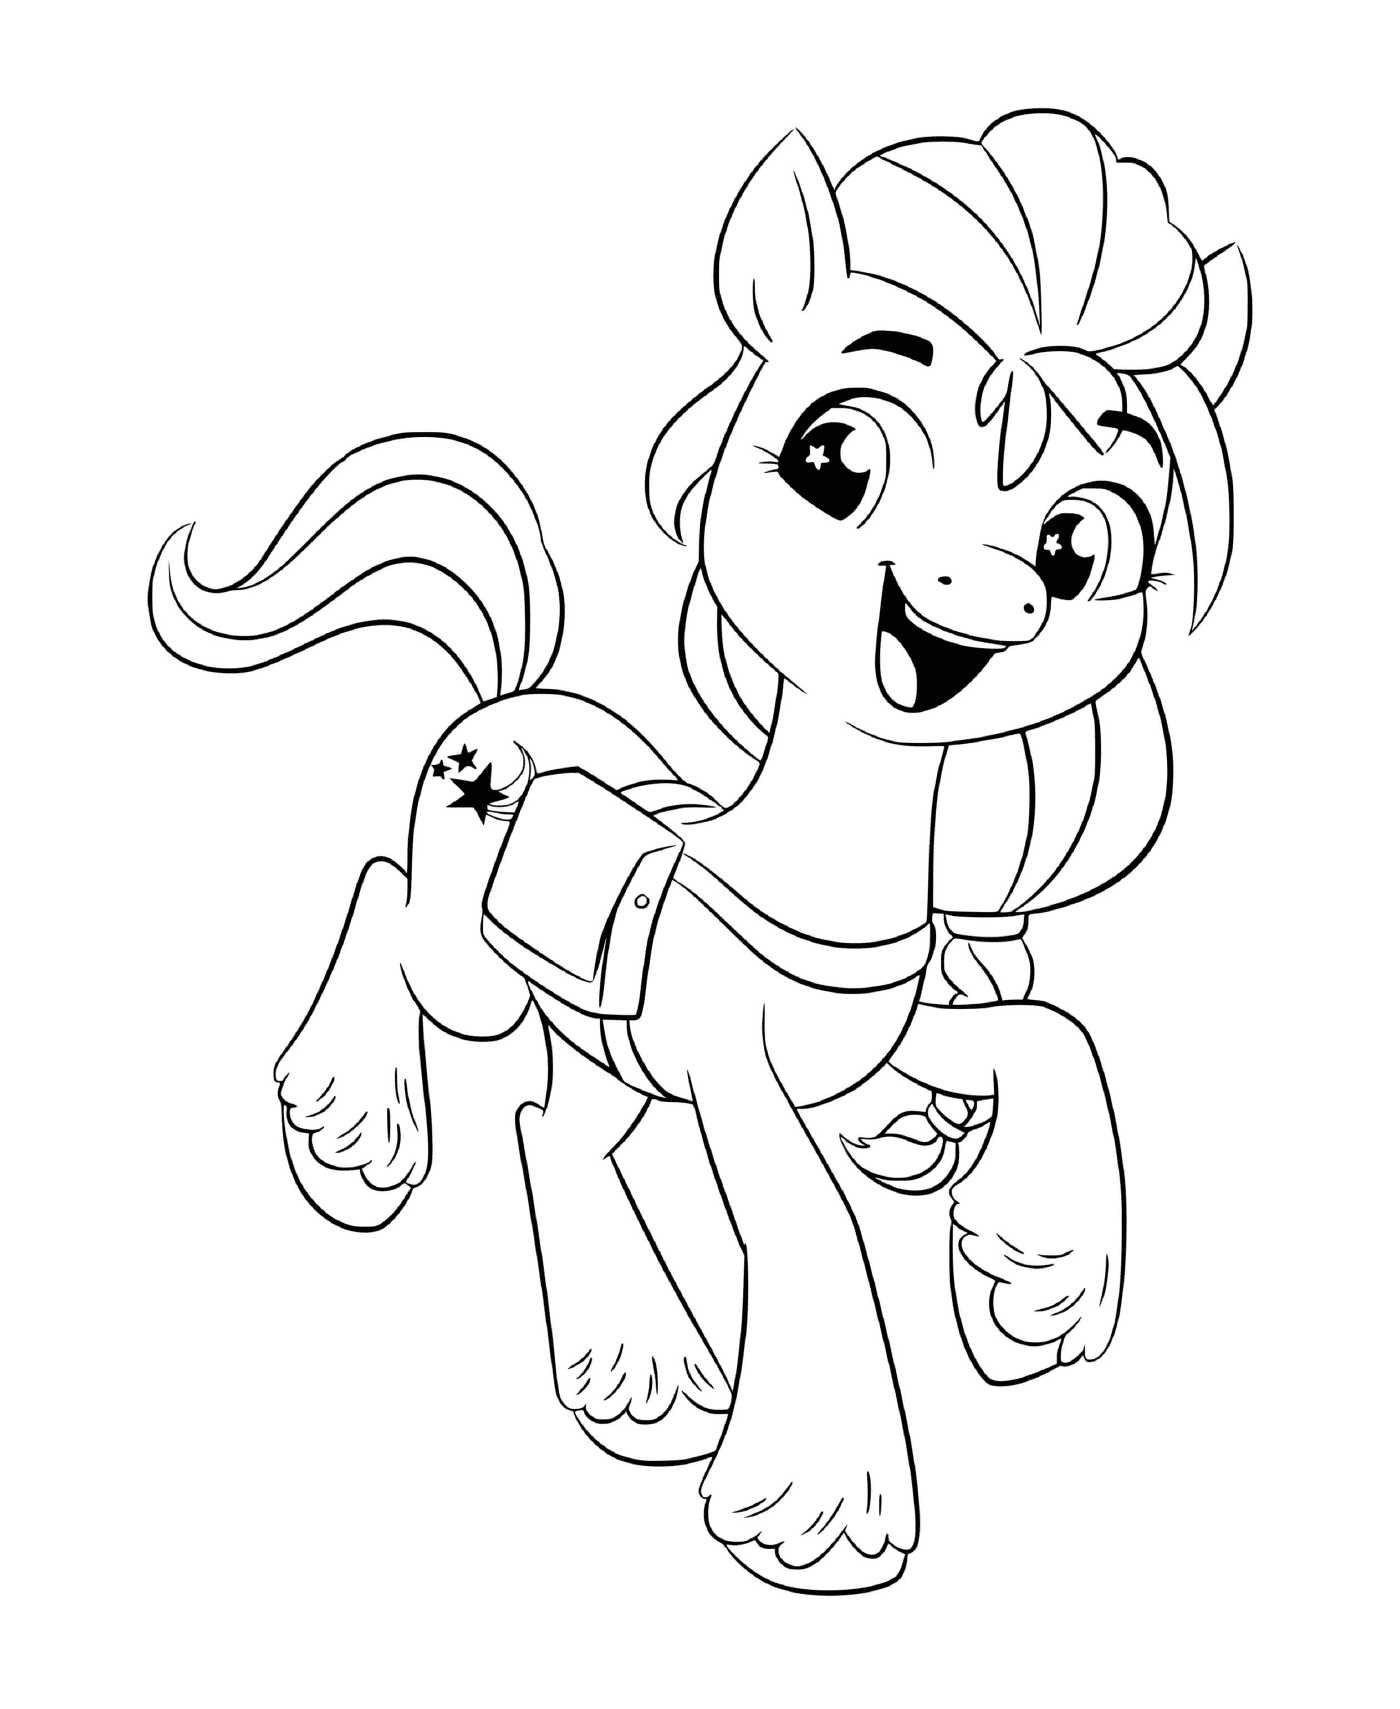  Soleado Starscout, curioso pony y aventurero 